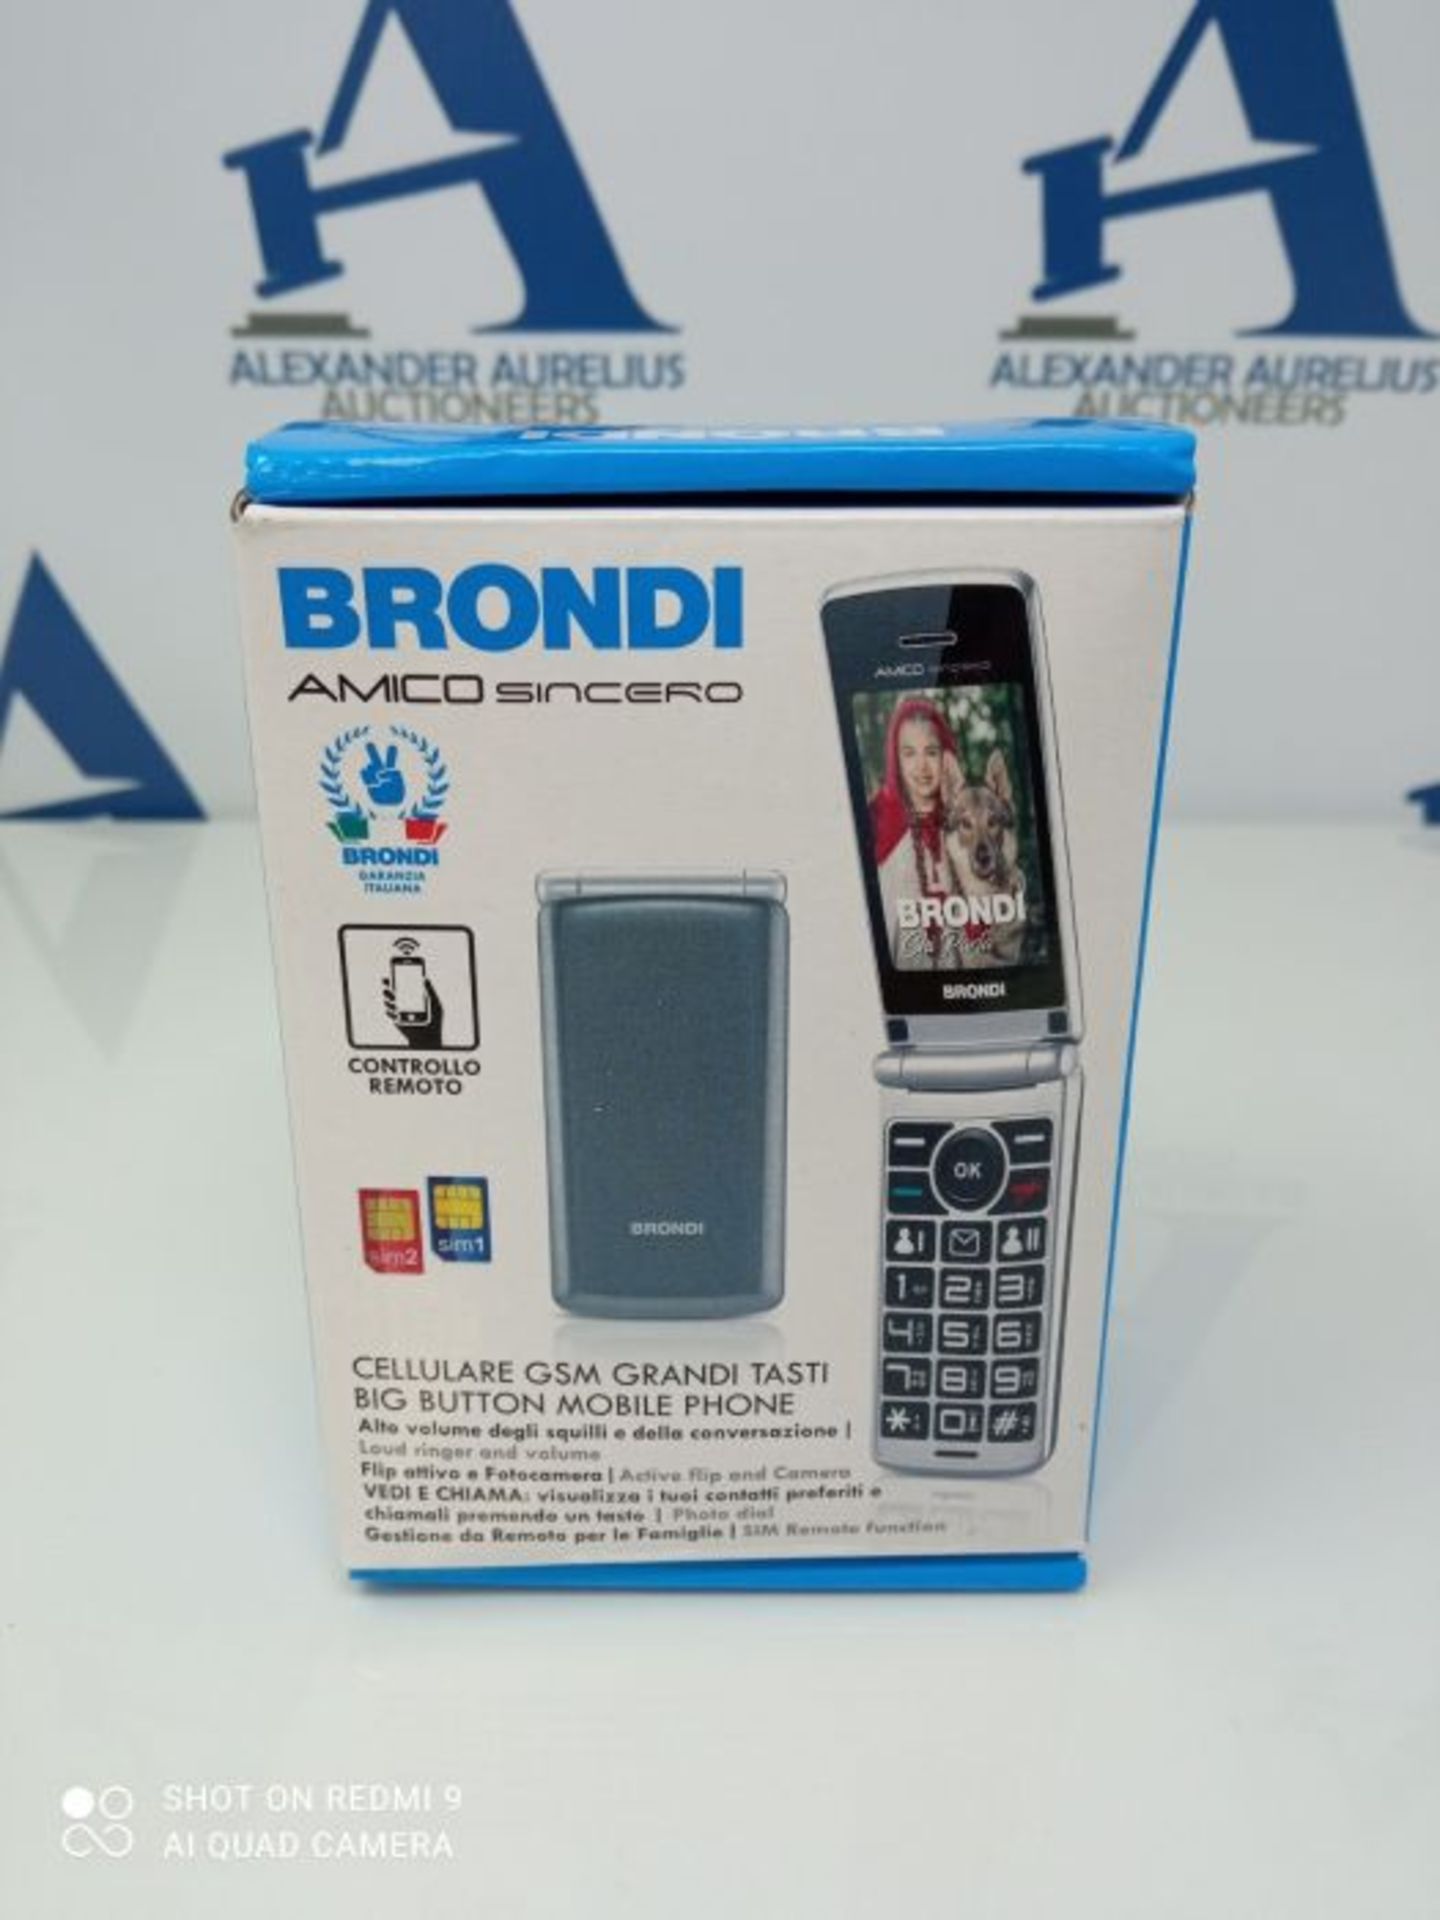 Brondi Amico Sincero Telefono Cellulare per Anziani GSM DUAL SIM con Tasti Grandi, Fun - Image 2 of 3